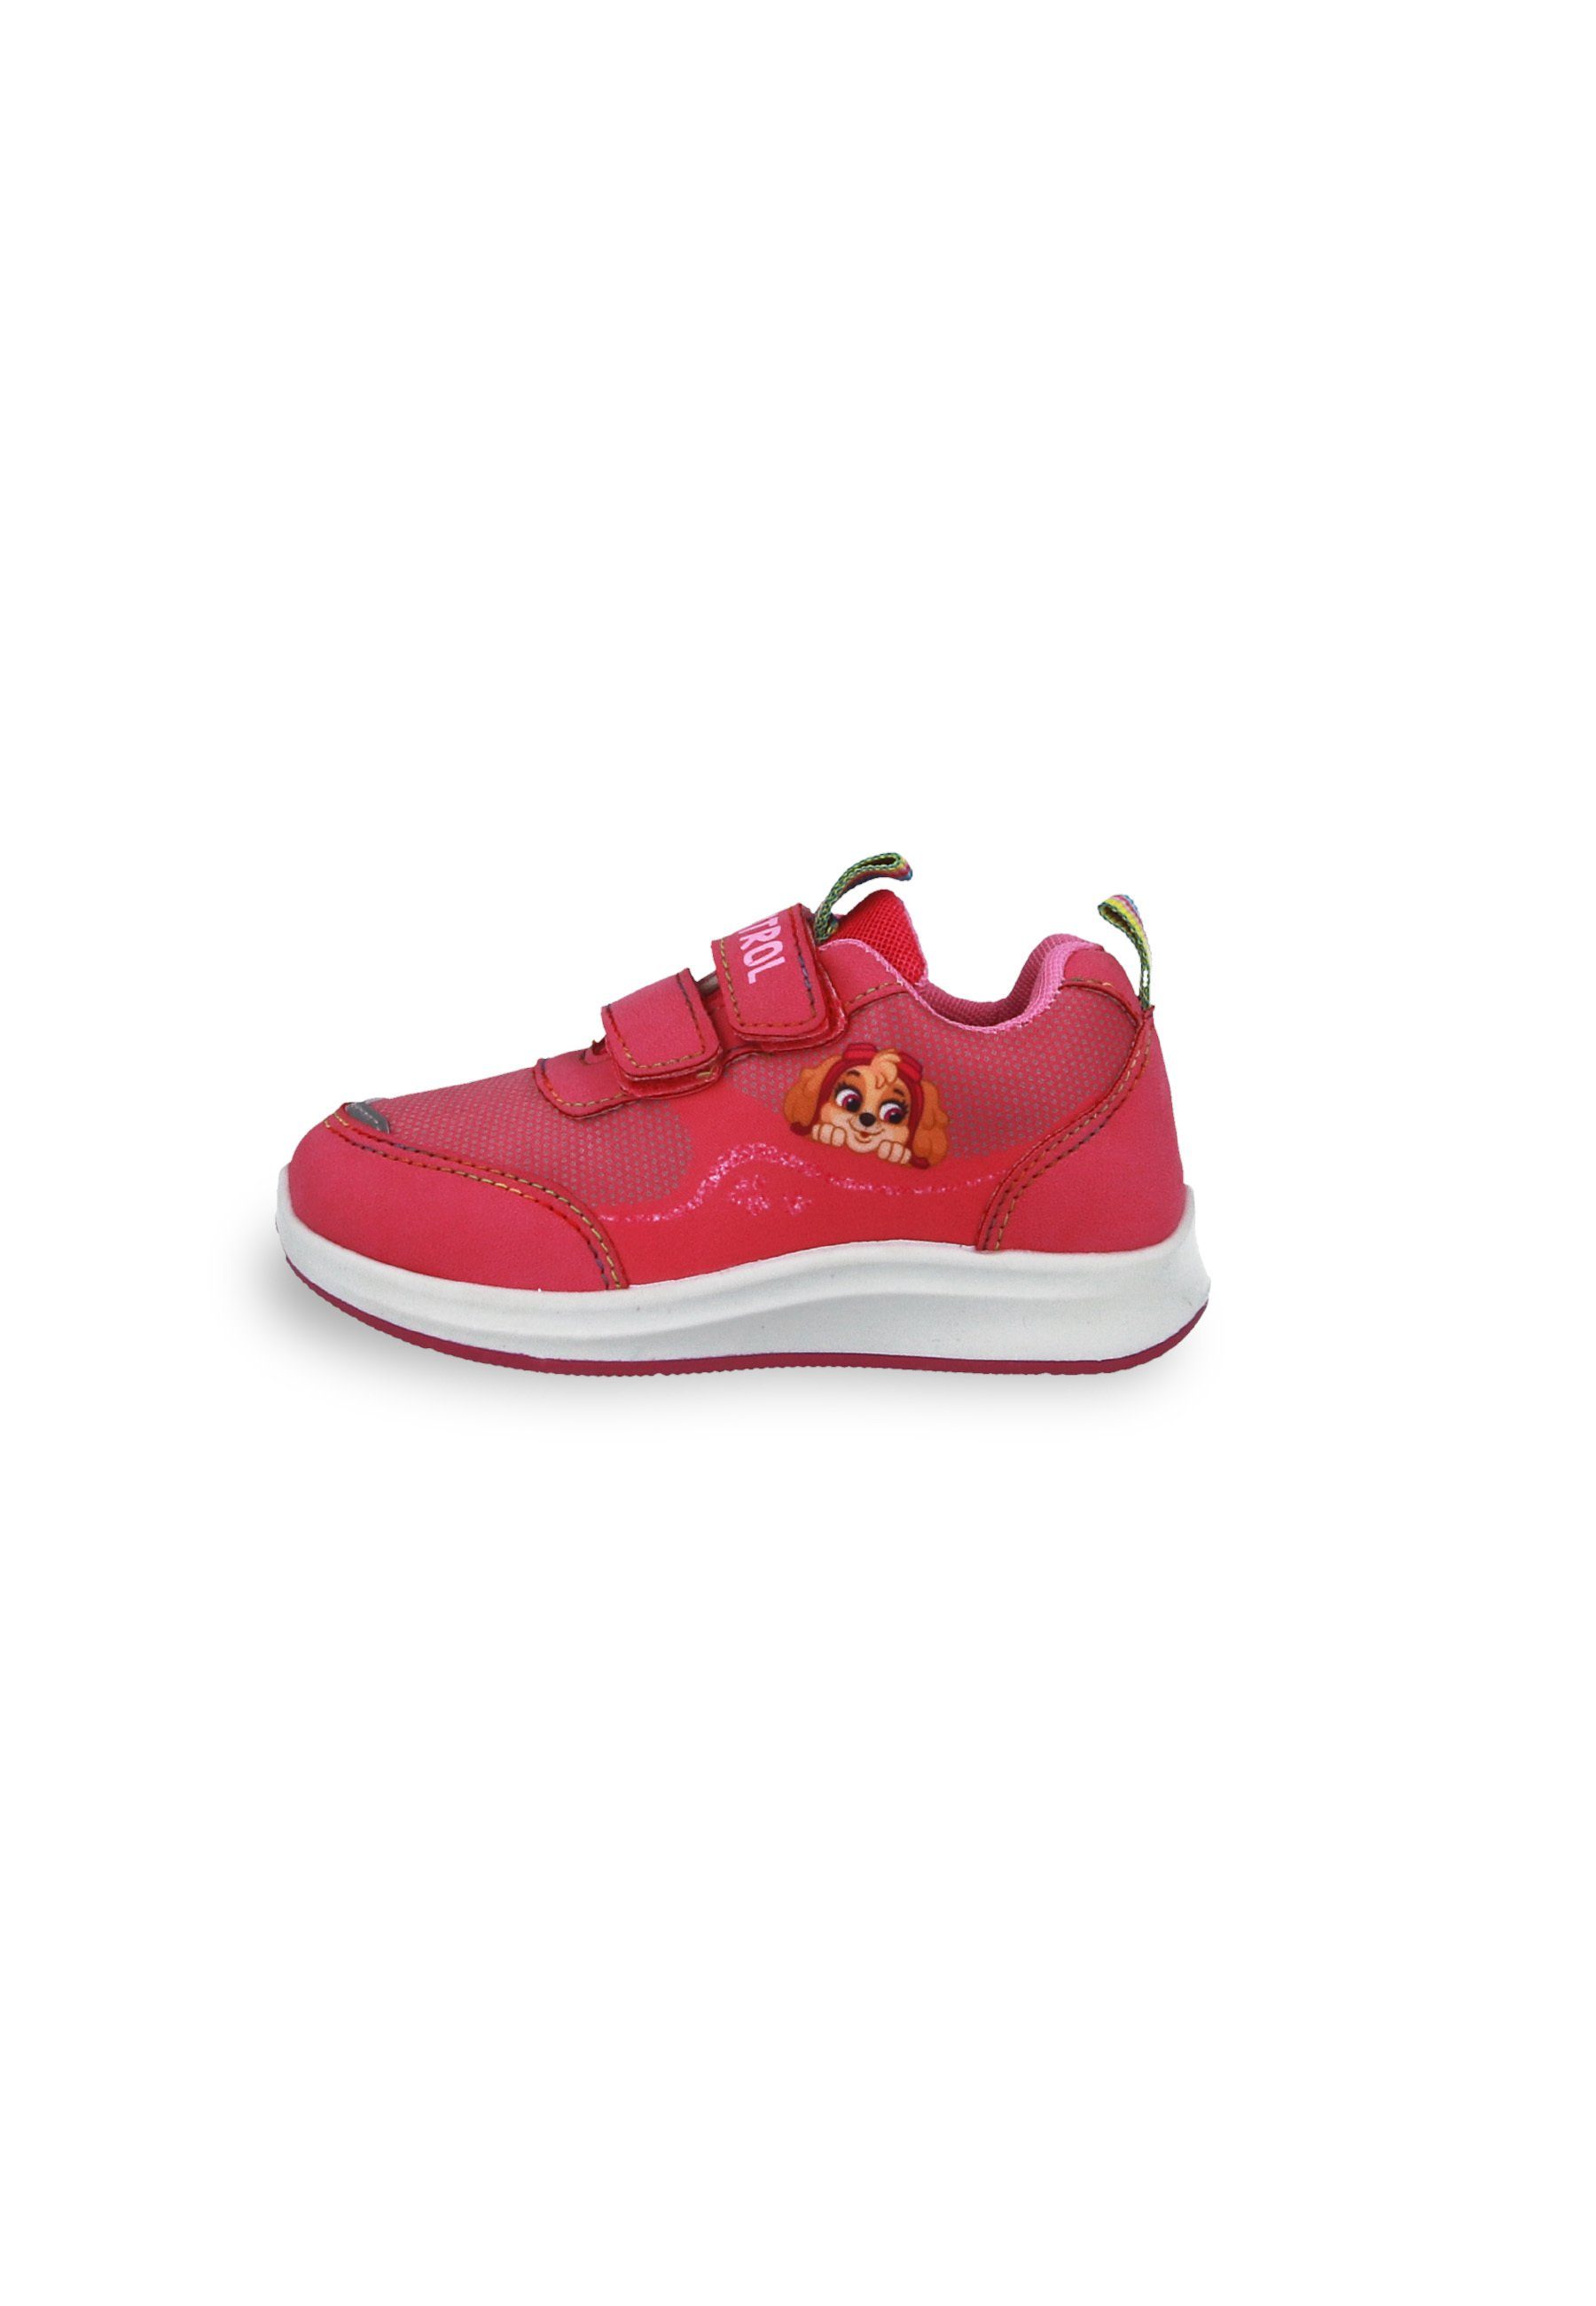 Kids2Go Leichter PawPatrol Skye Sneaker mit Klettverschluss und Zuglaschen Sneaker Mit Klettverschluss. Mehrfarbige Sohle. Zuglasche. Motivdruck